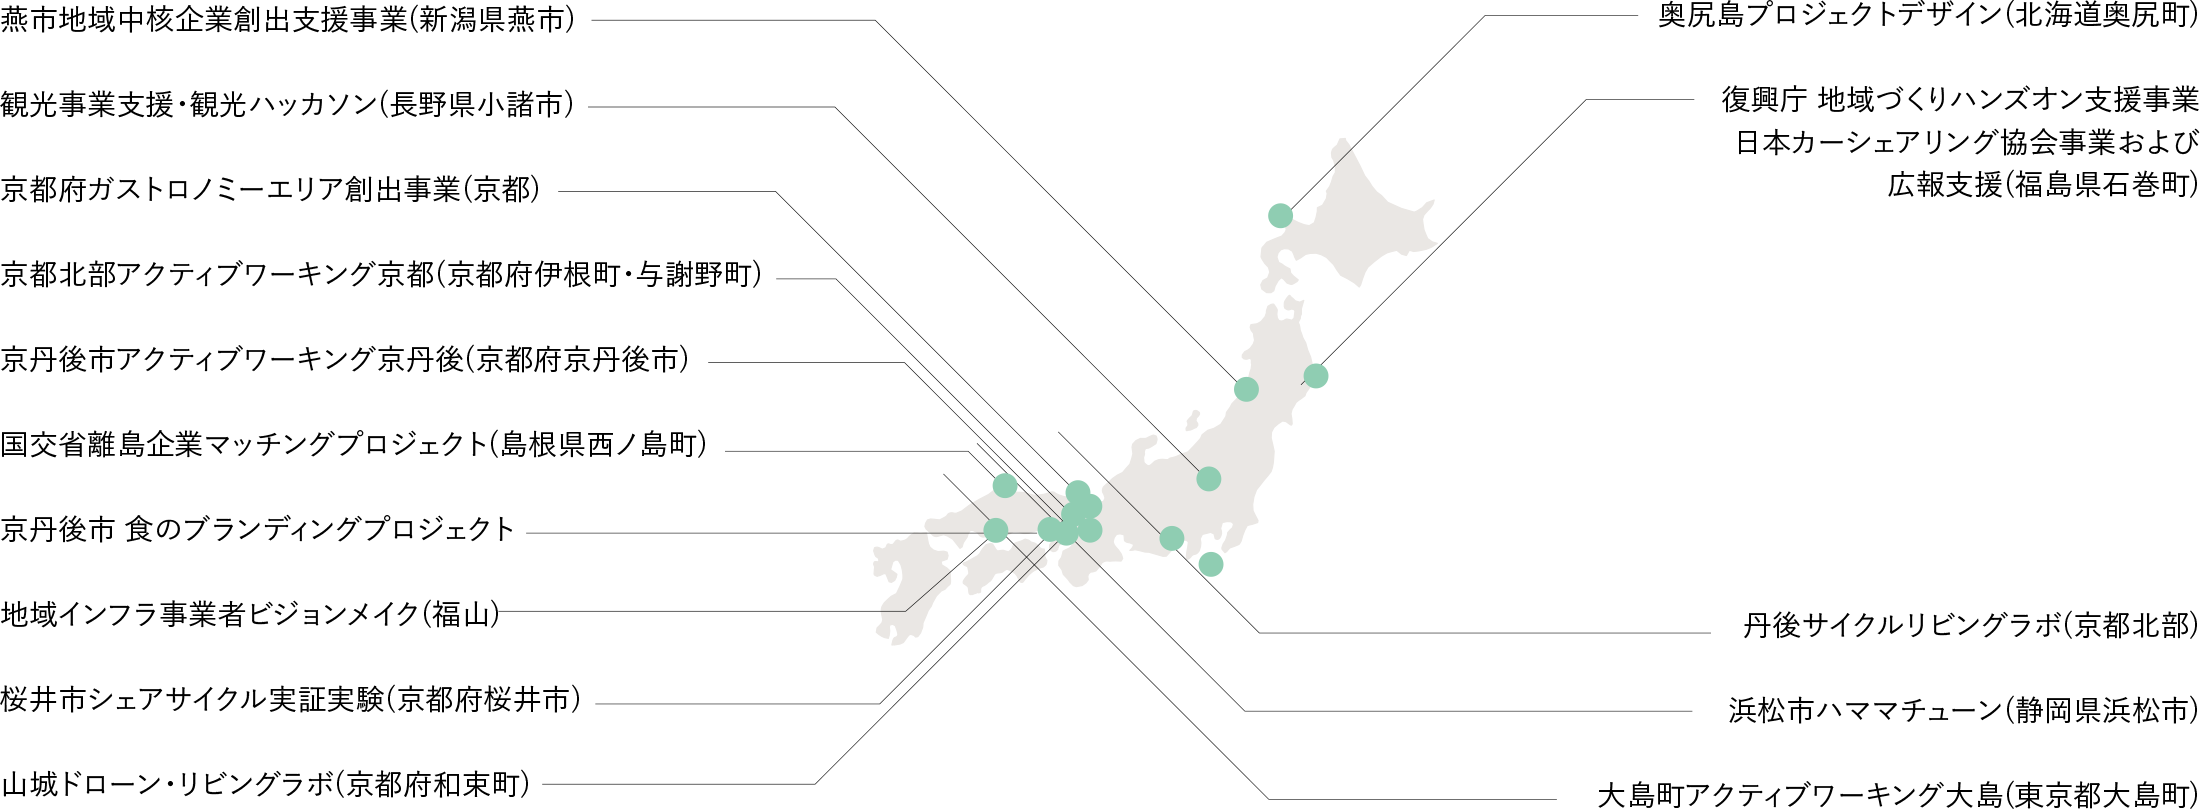 Societal_日本地図_20220709-1